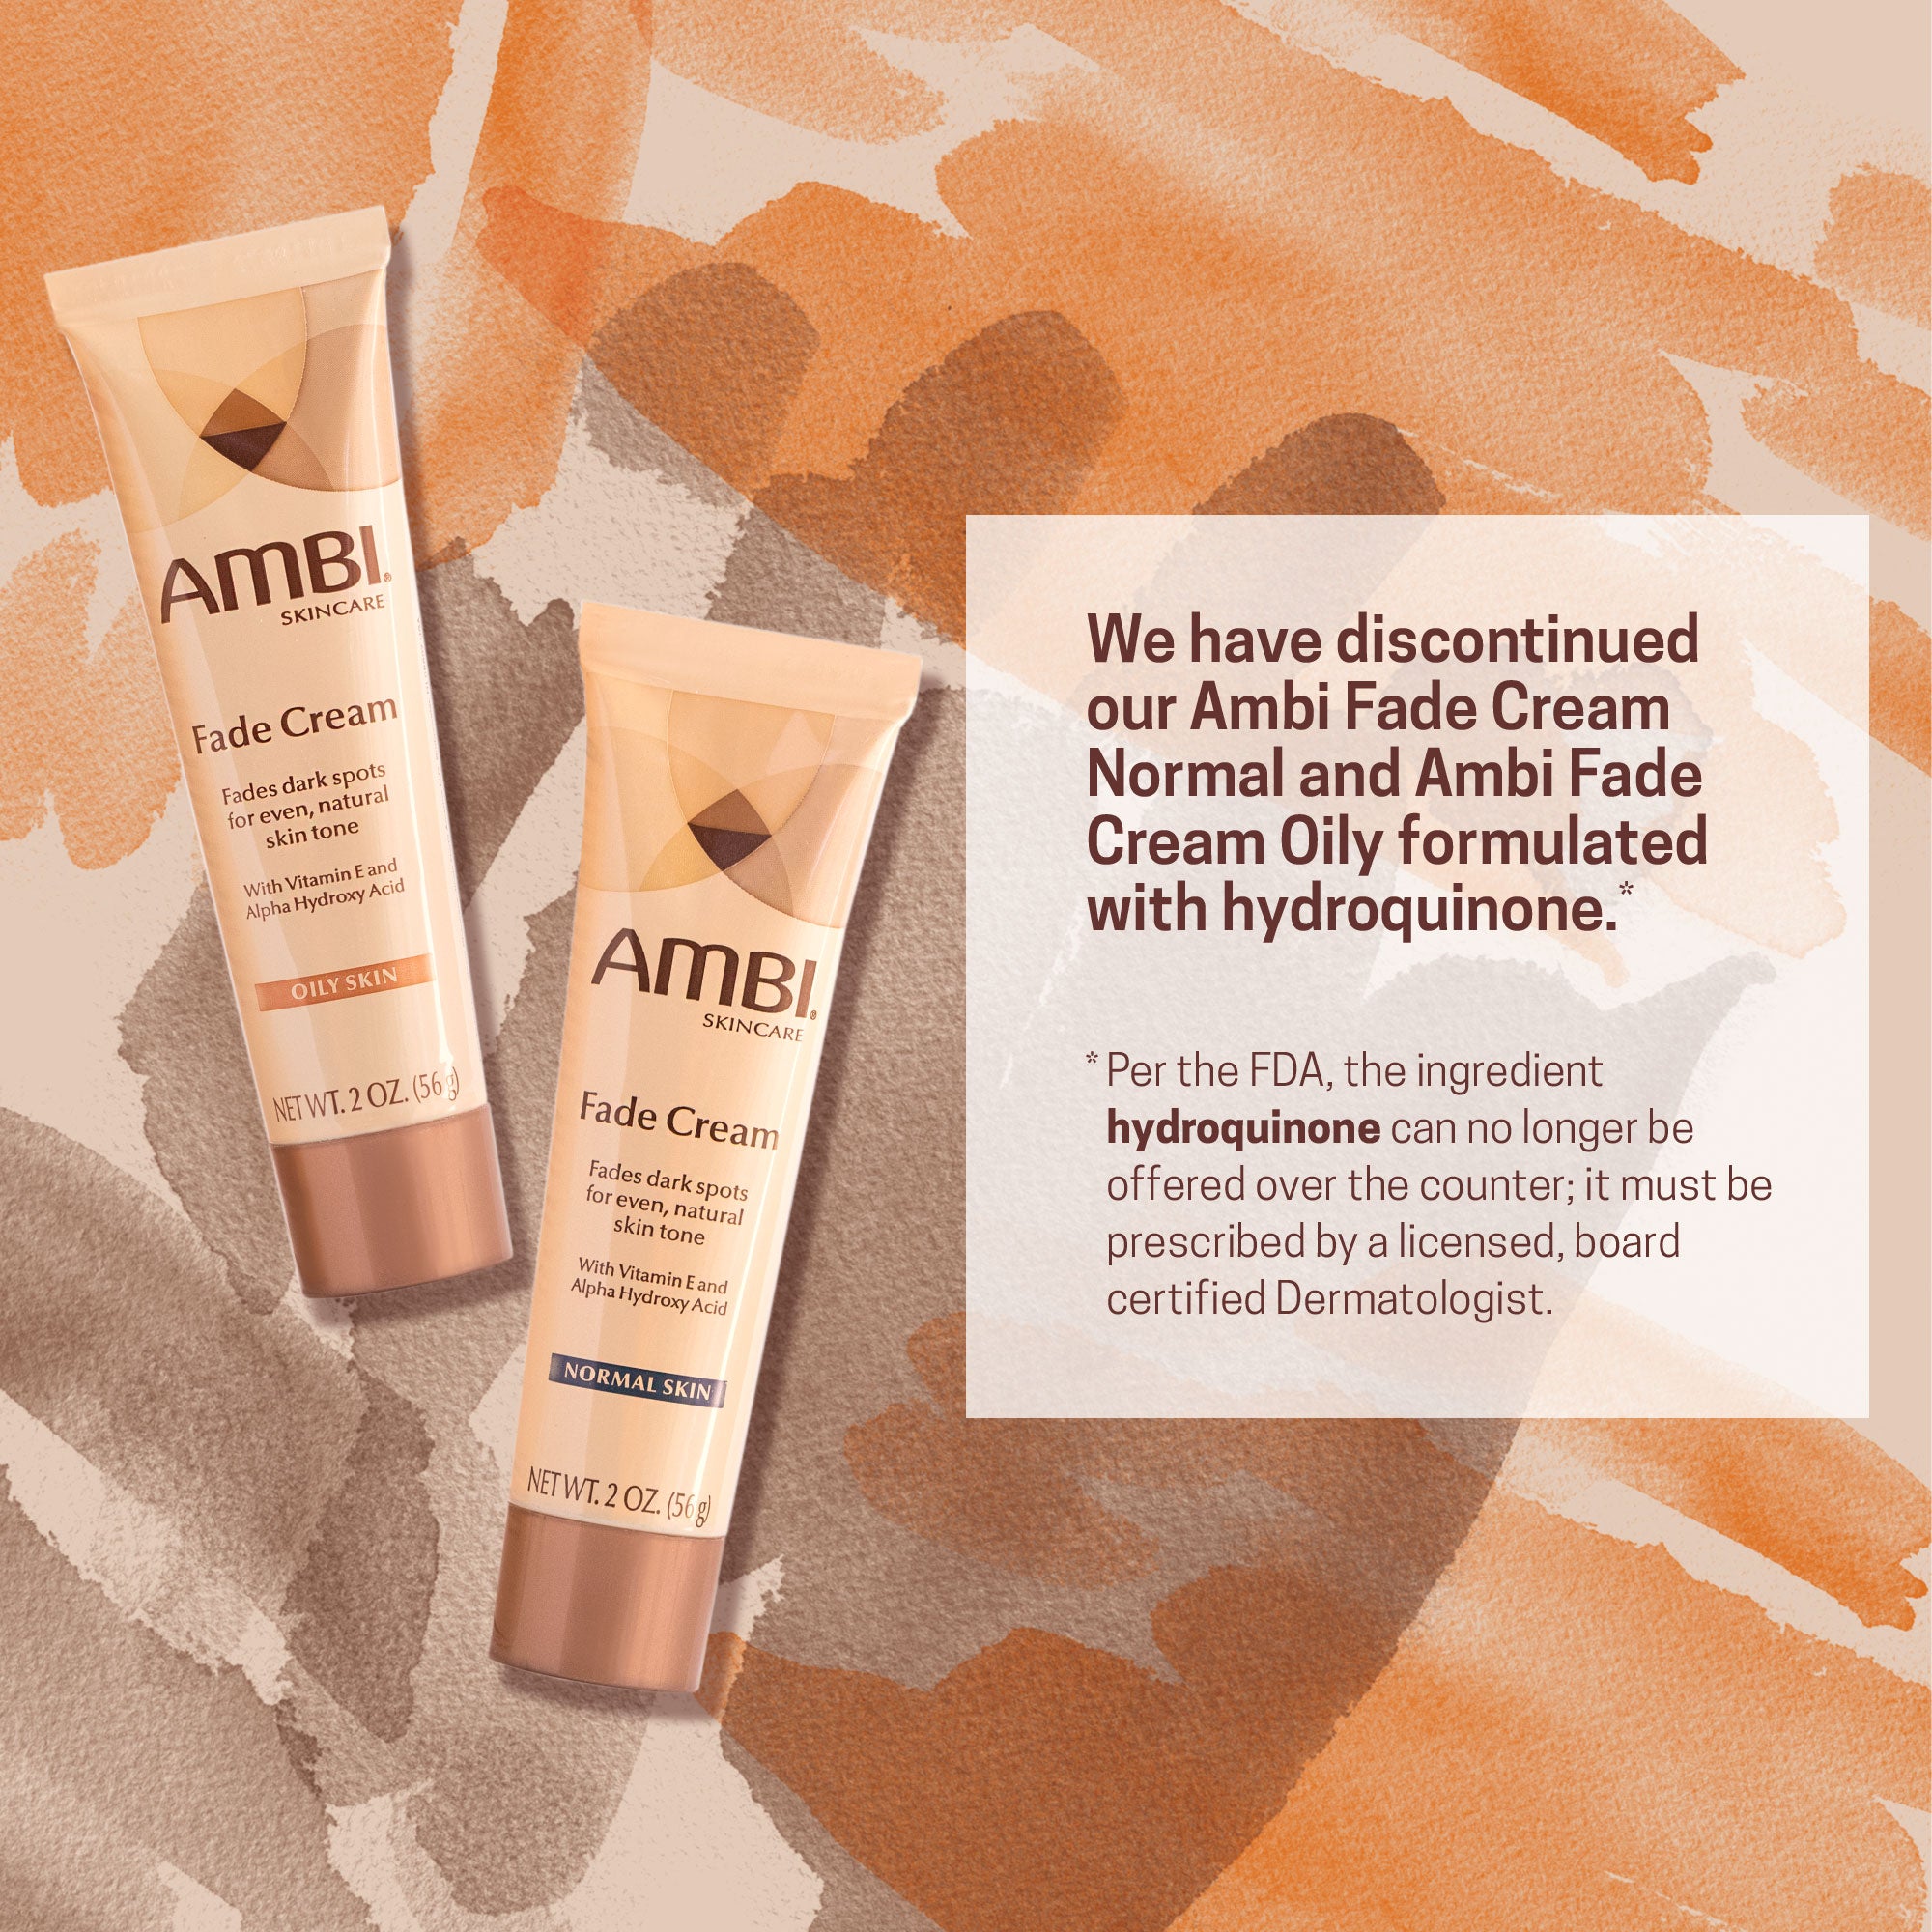 NEW! Advanced Fade Cream Hydroquinone-Free – Ambi Skincare